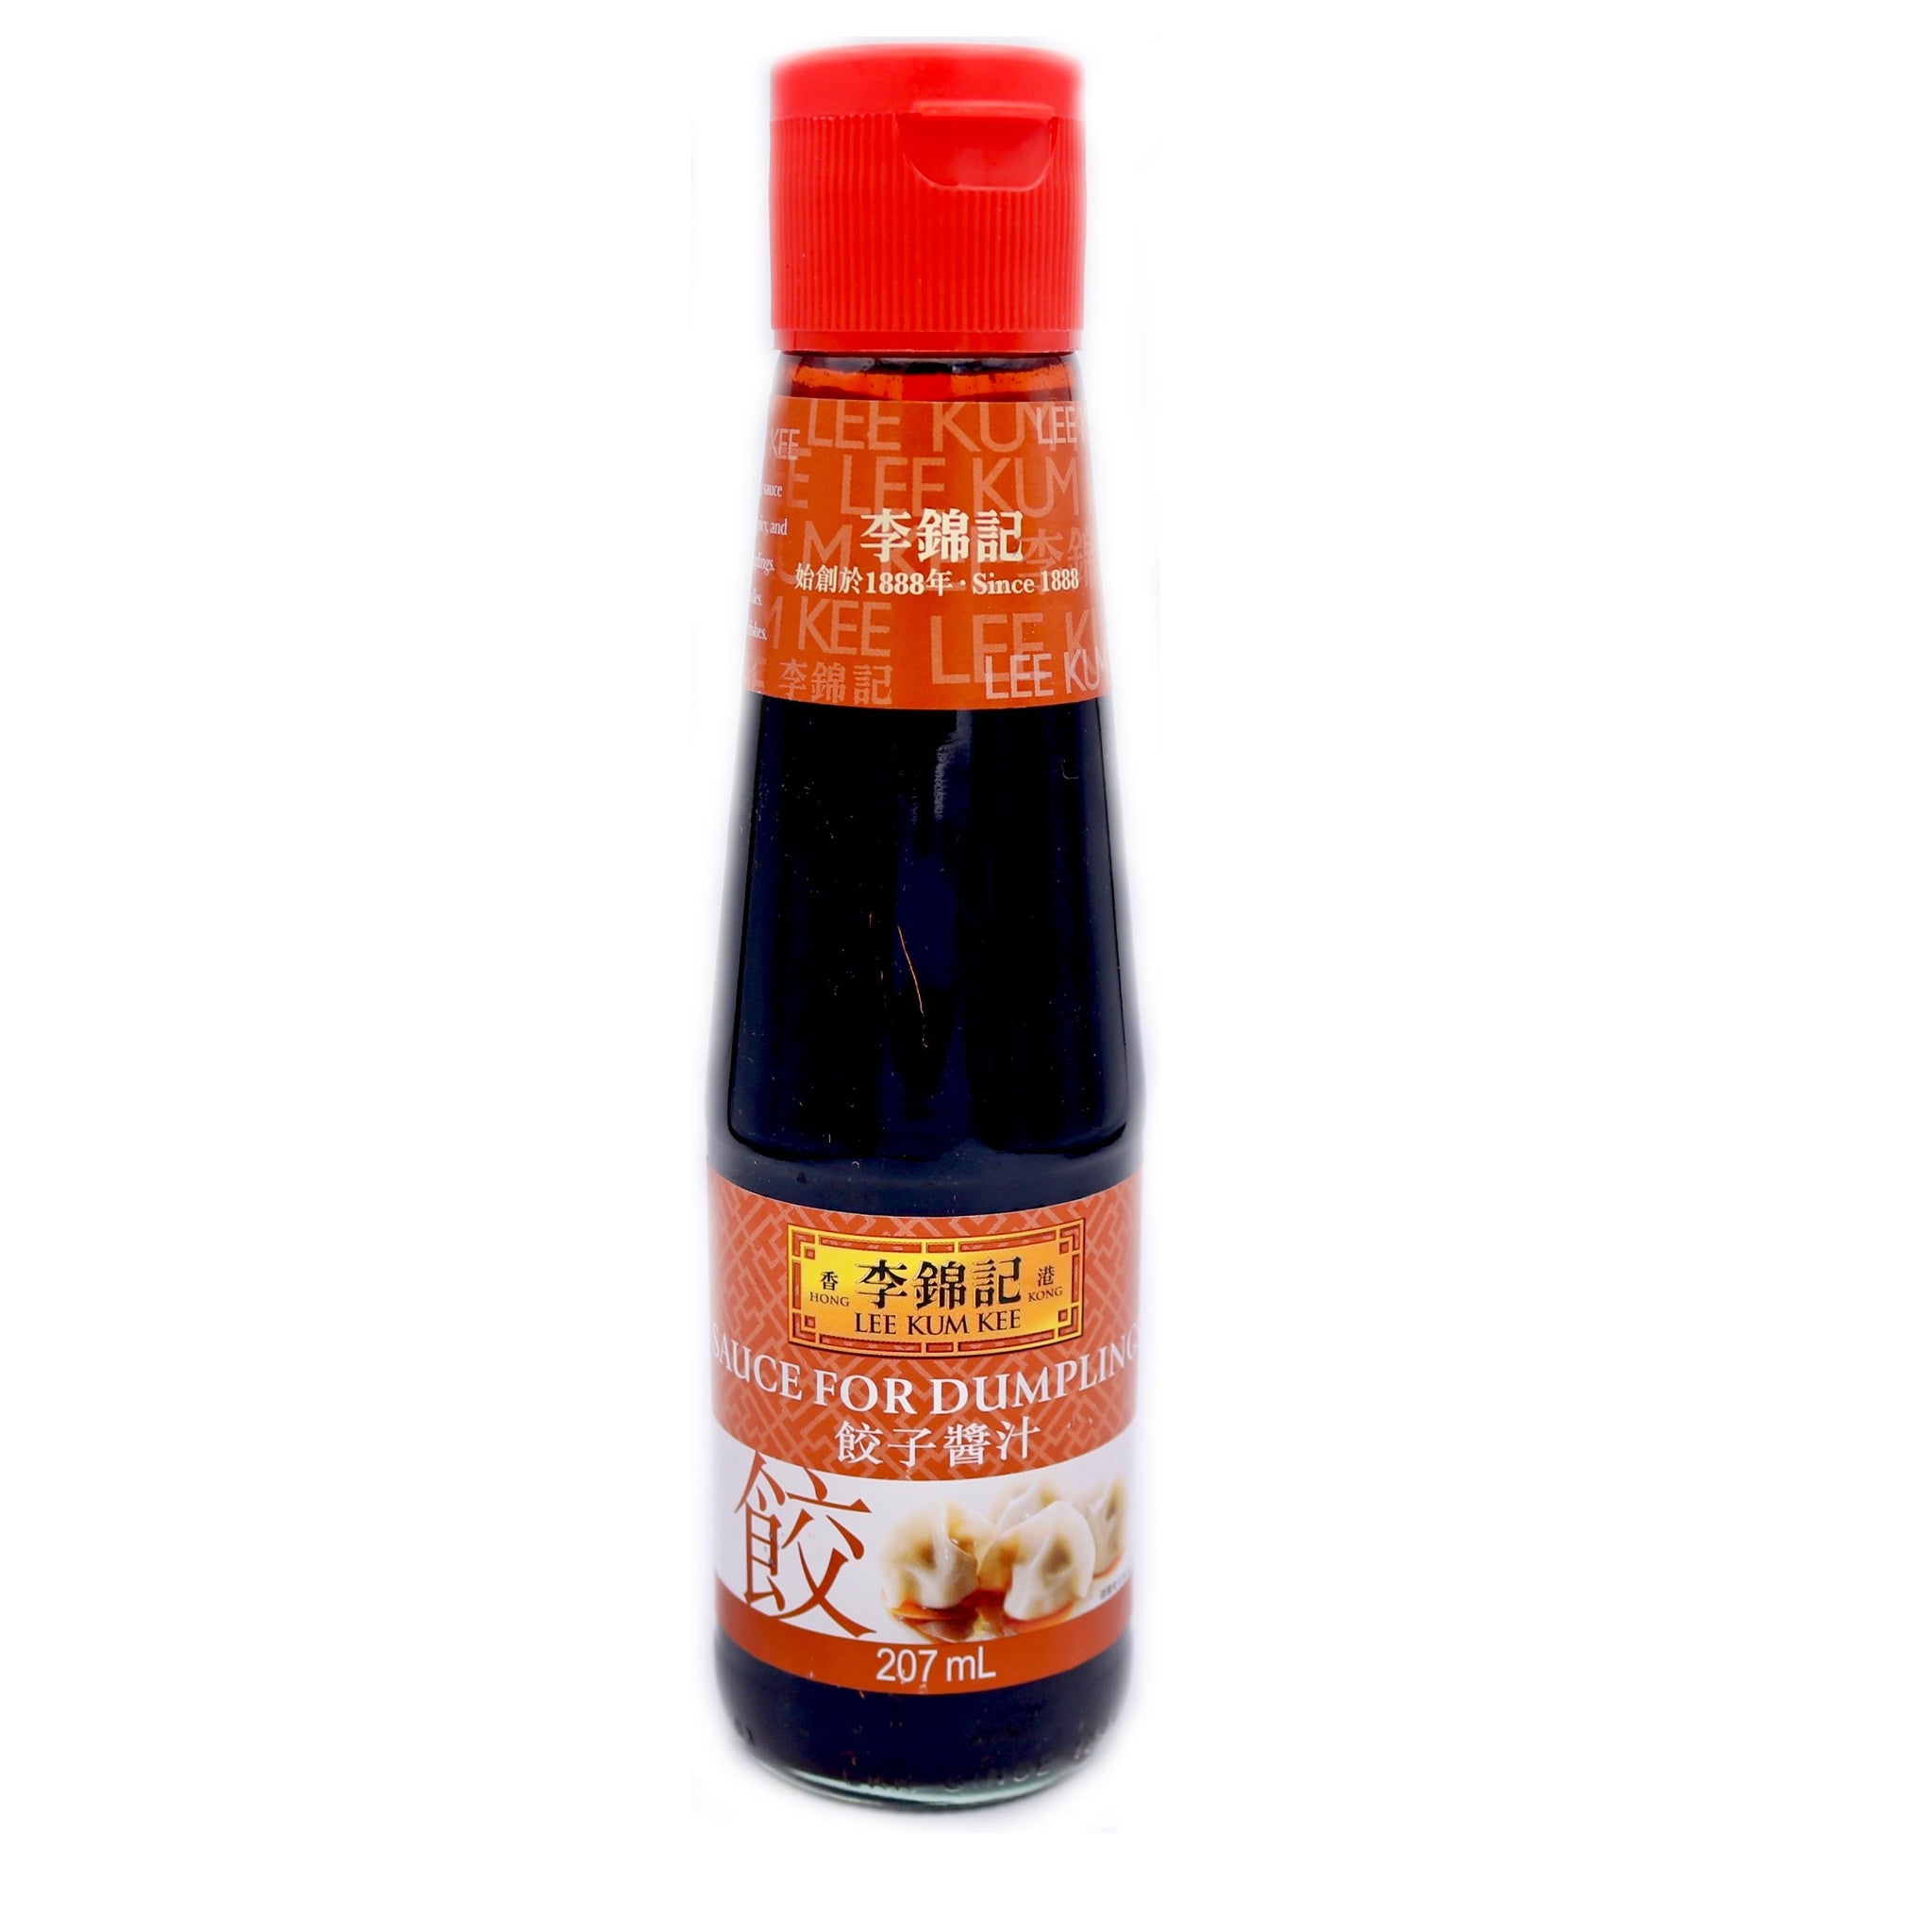 Lee Kum Kee Sauce for Dumplings 207ml - Tuk Tuk Mart